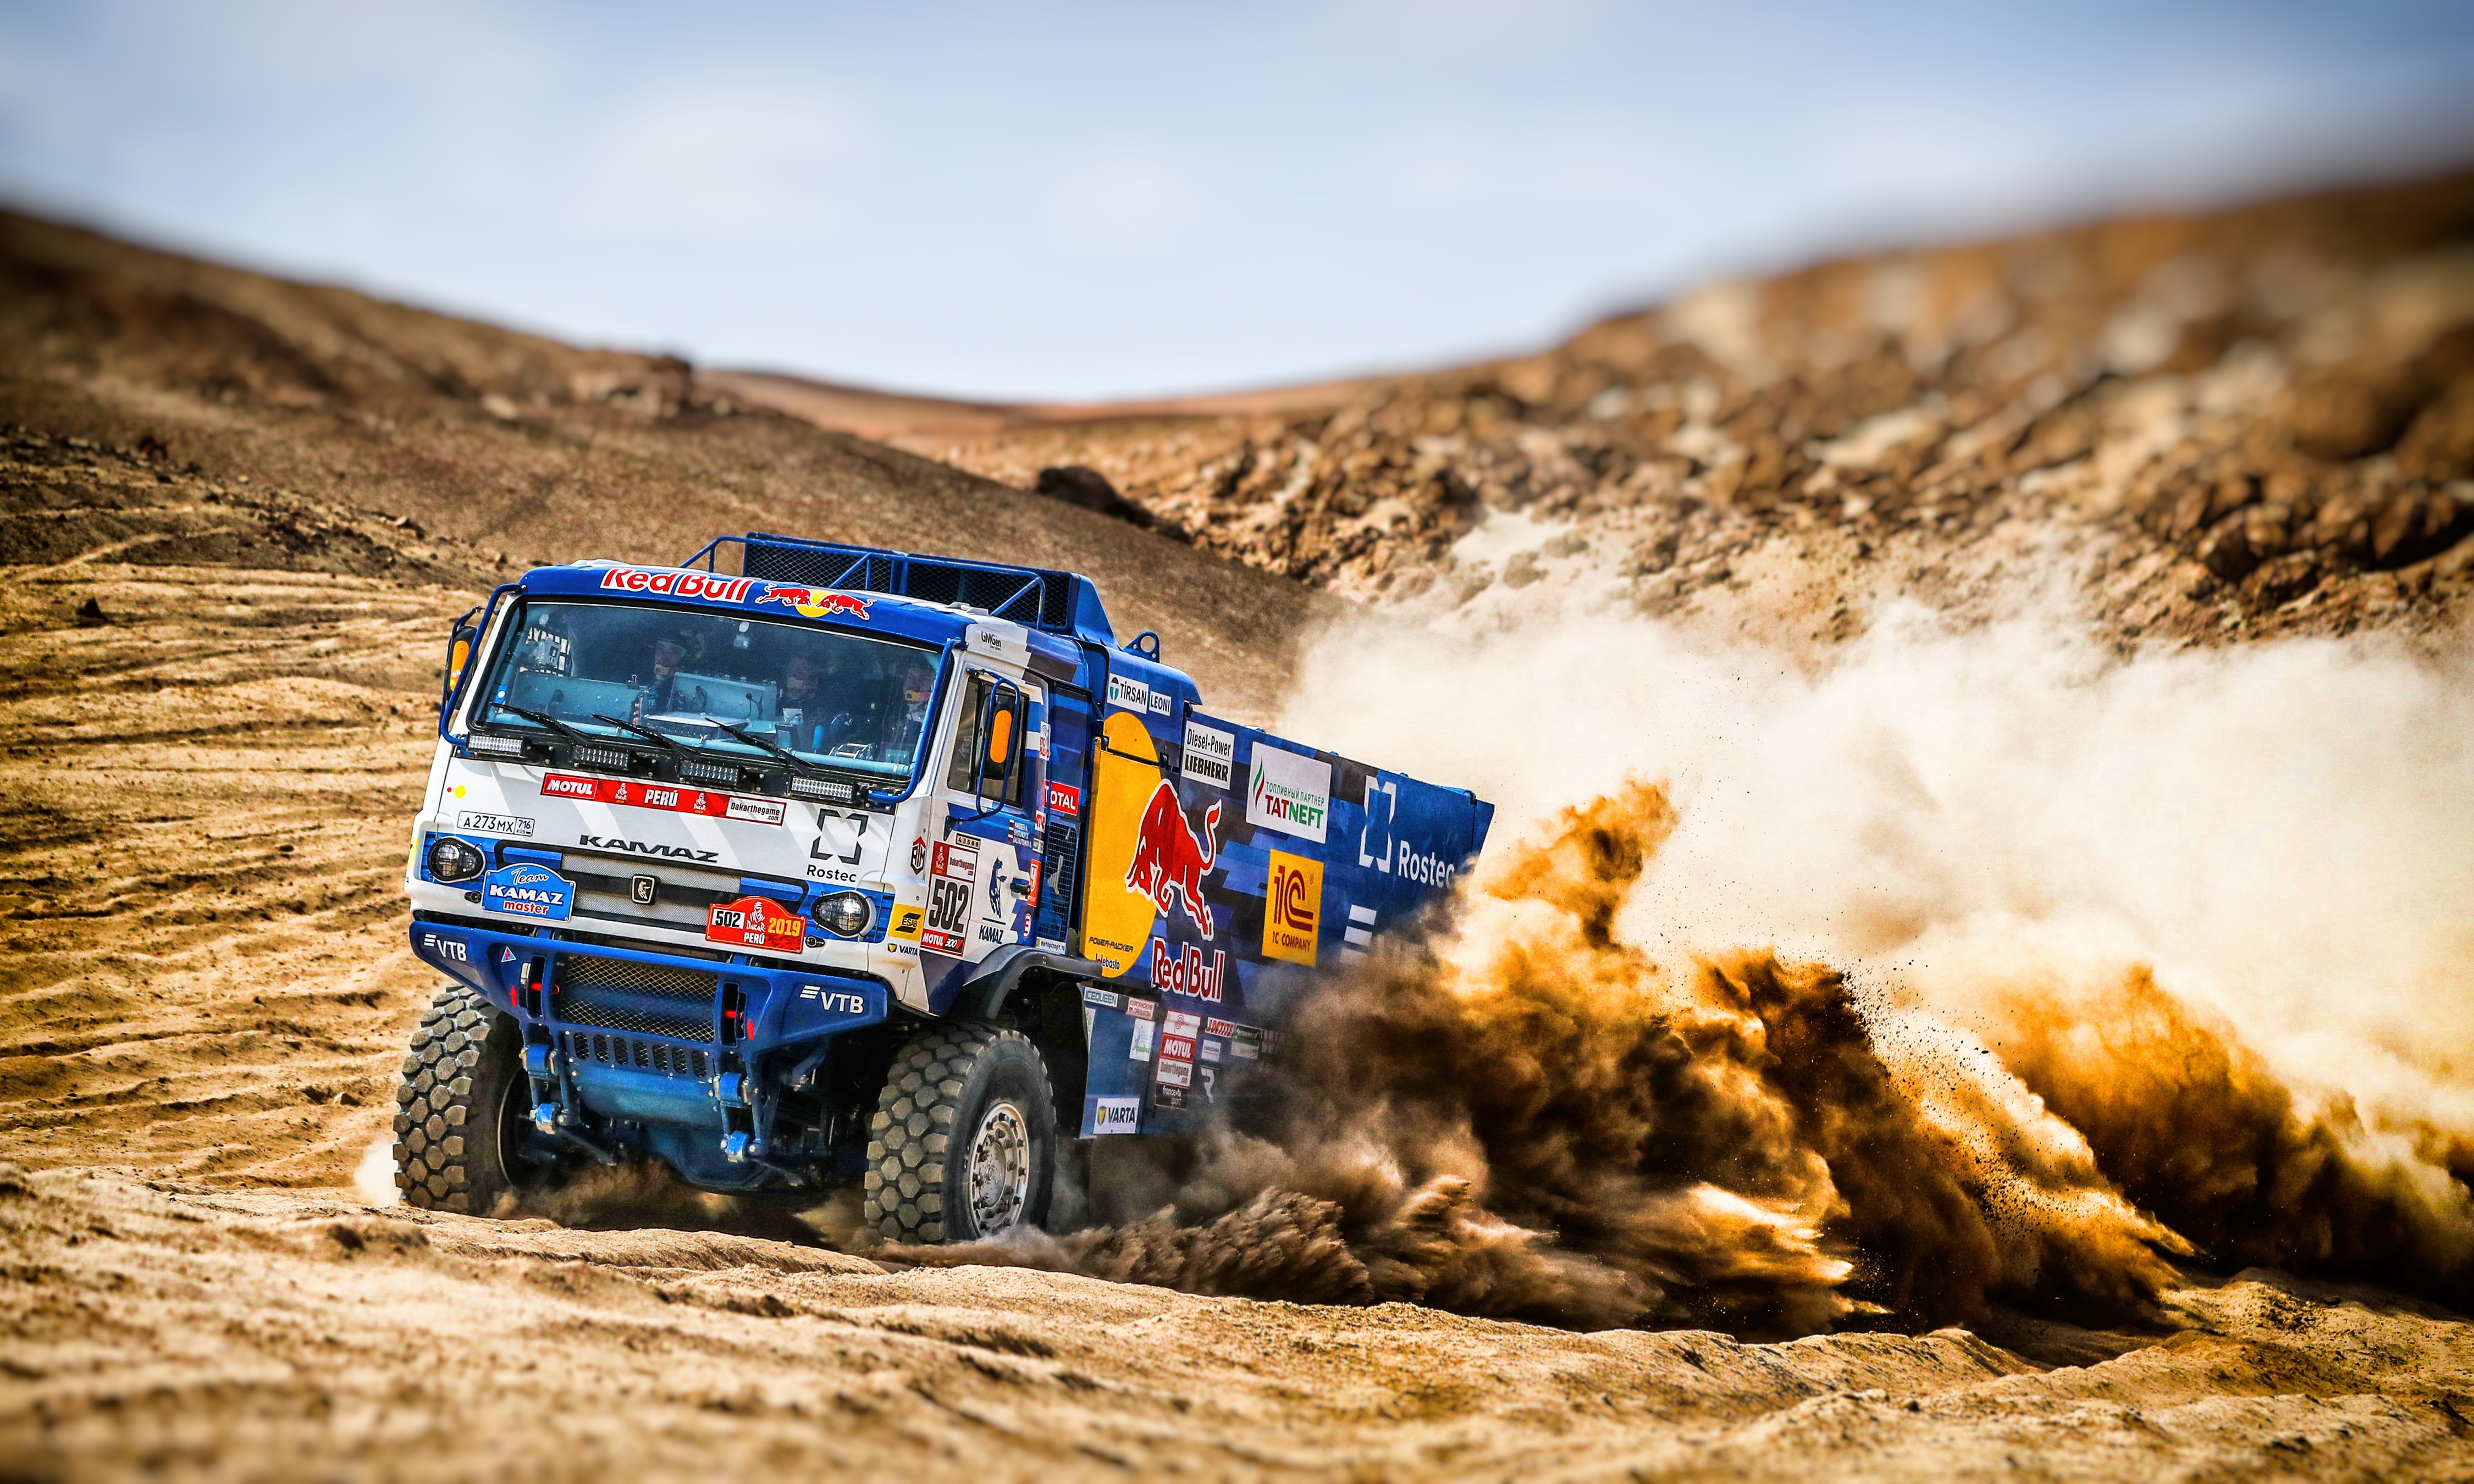 Desert Rallying Sand Truck Vehicle 4500x2700